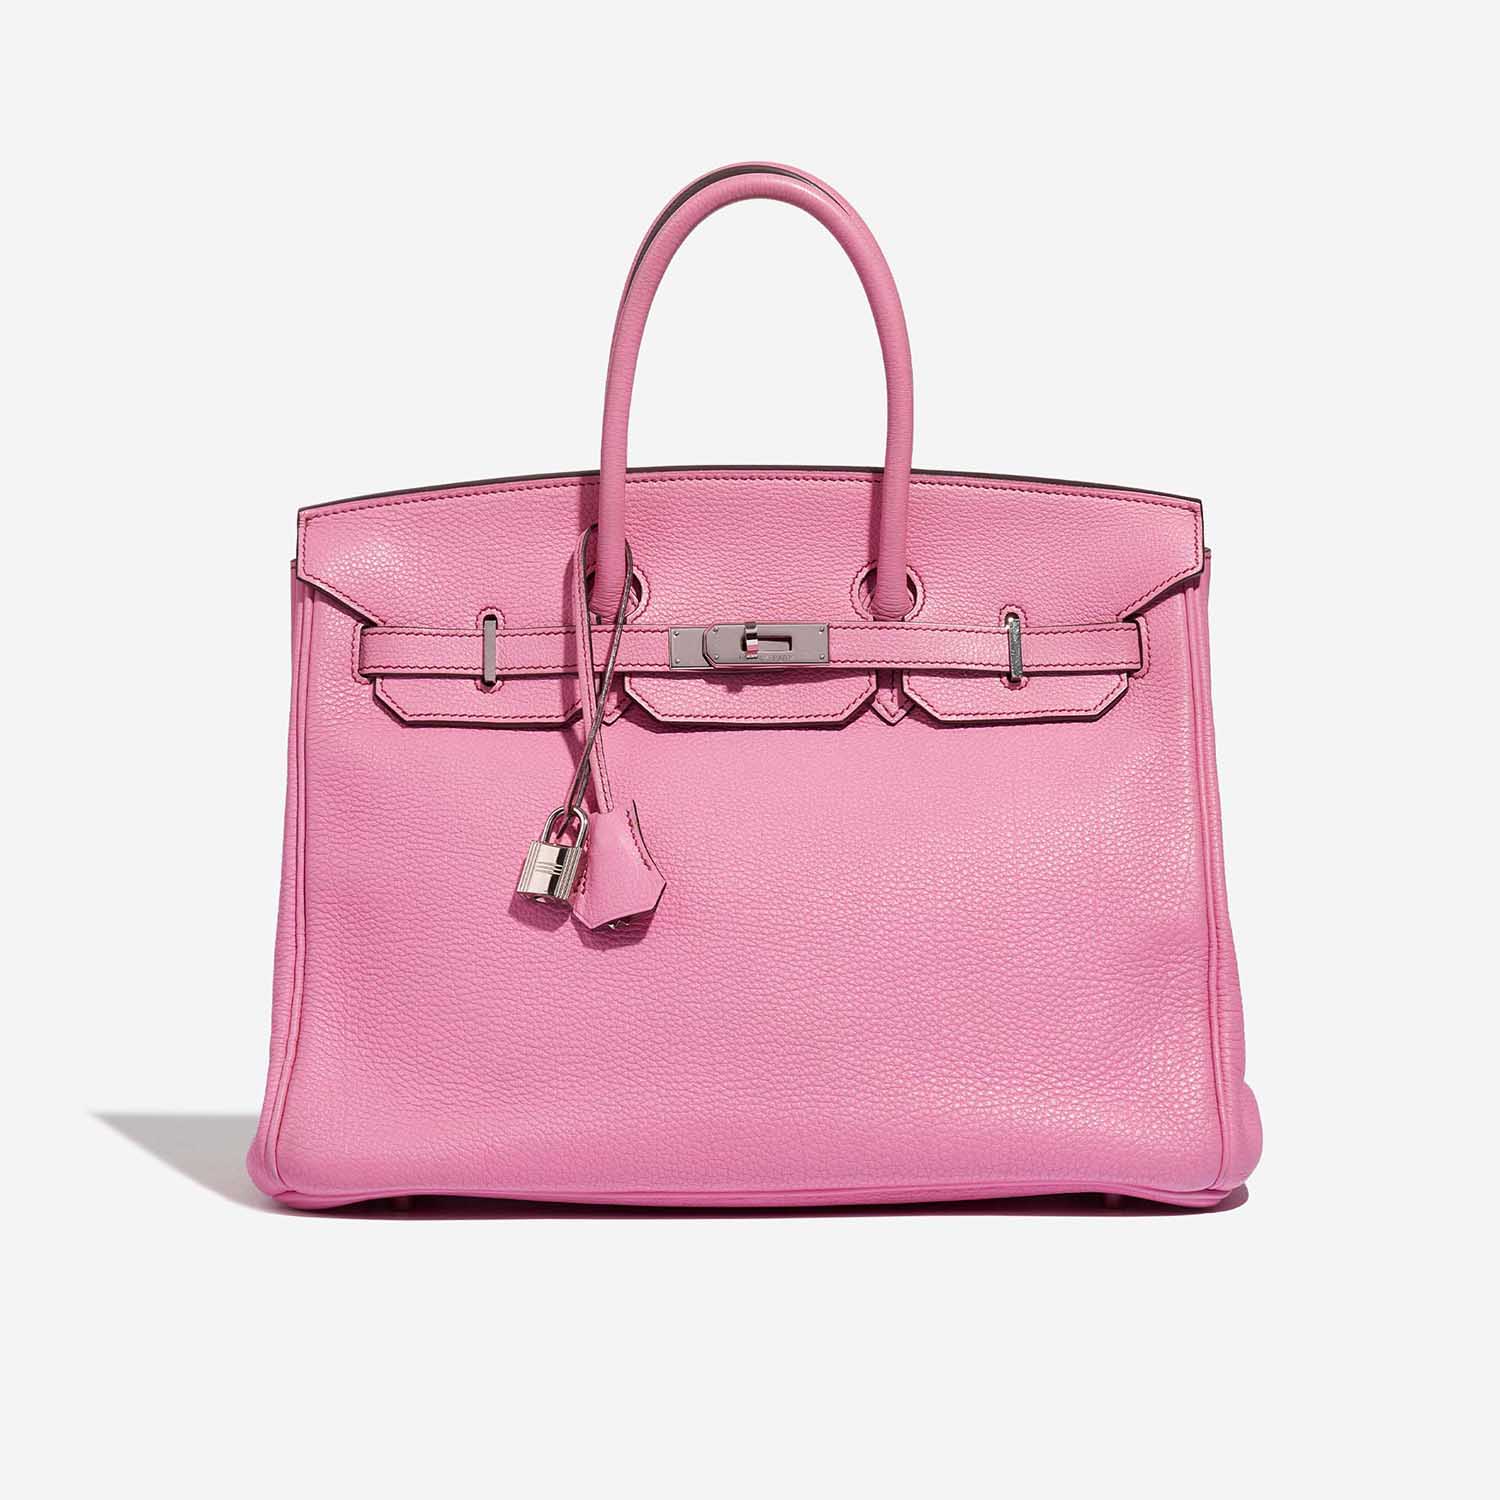 pink hermes bag